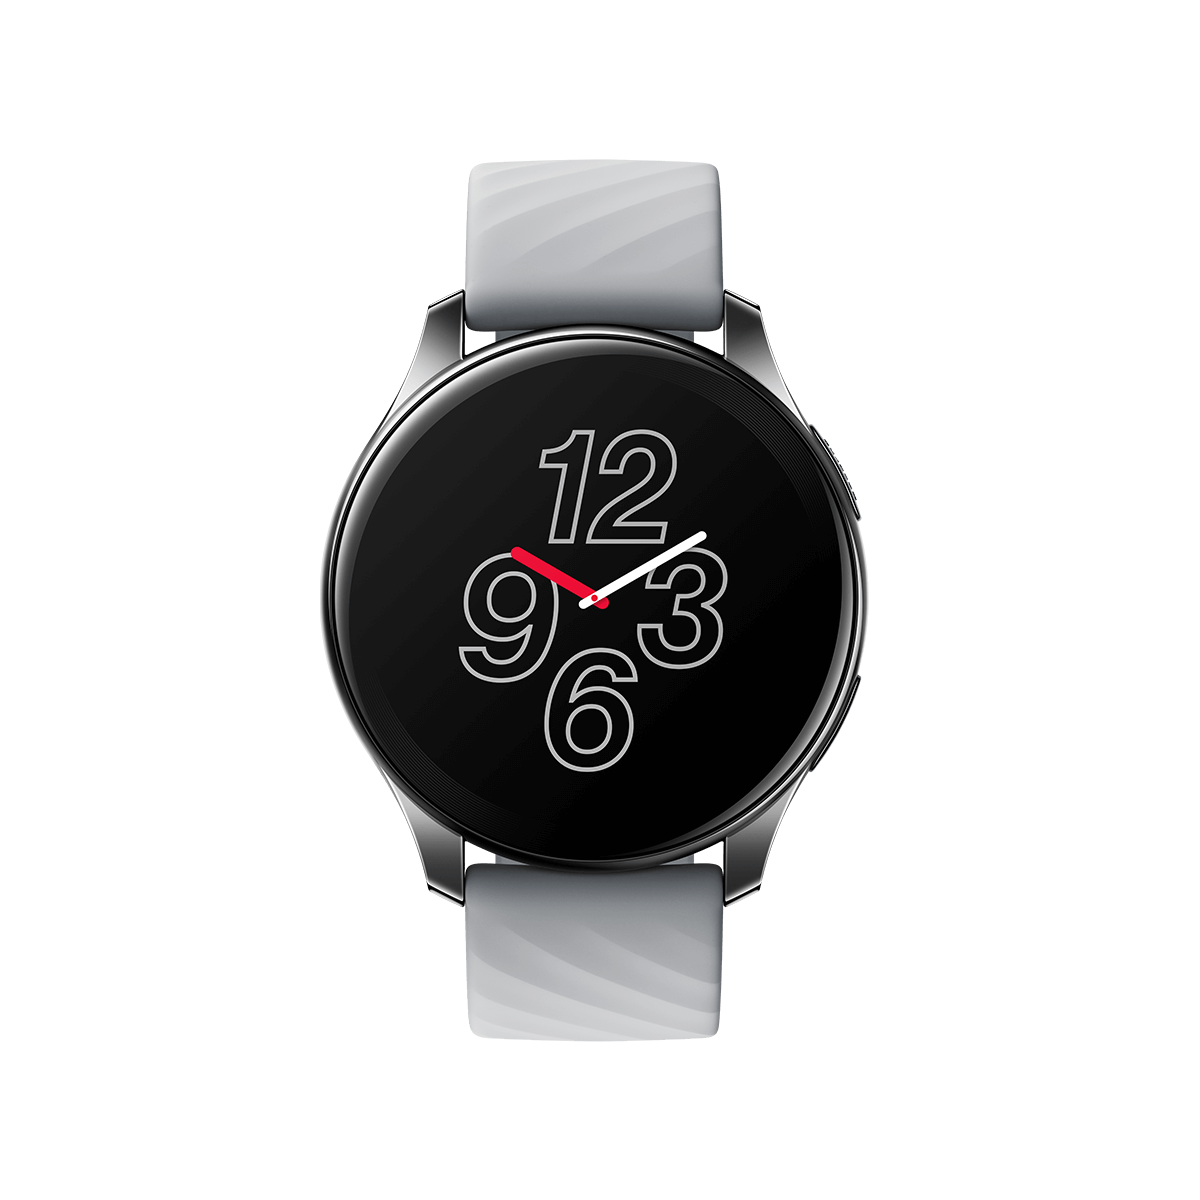 OnePlus Watch (Midnight Black)